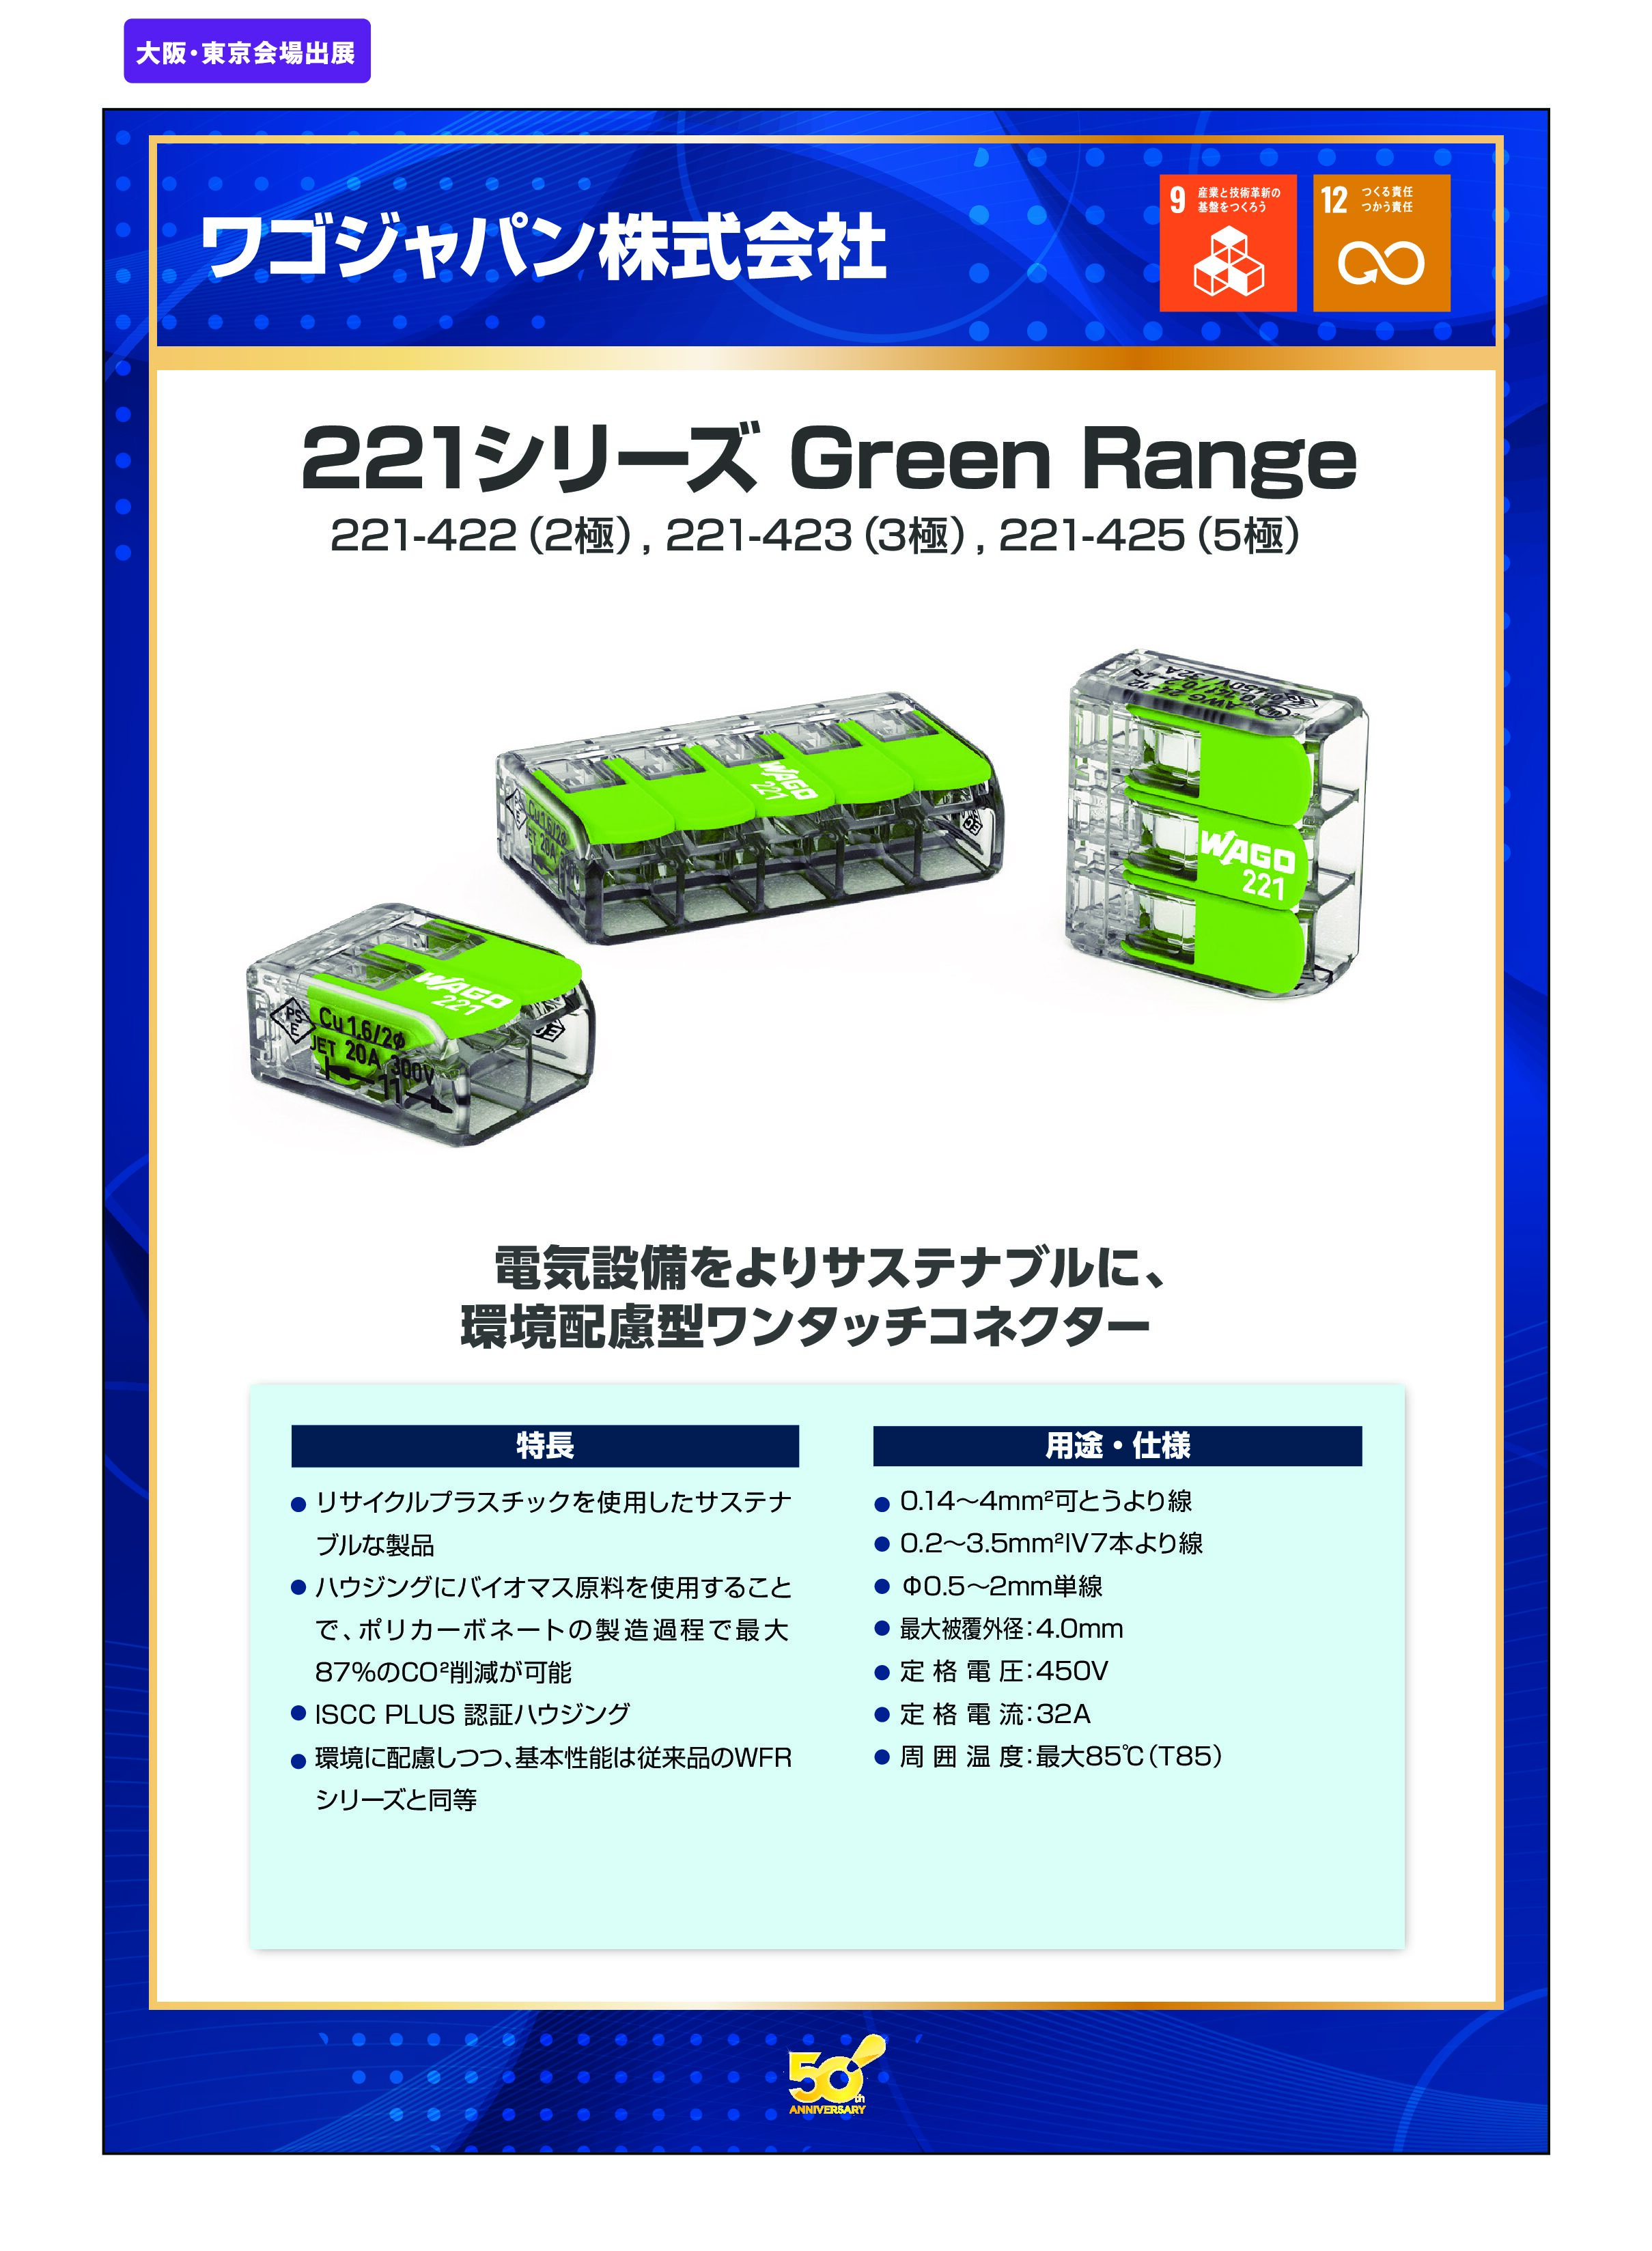 「221シリーズ Green Range」ワゴジャパン株式会社の画像